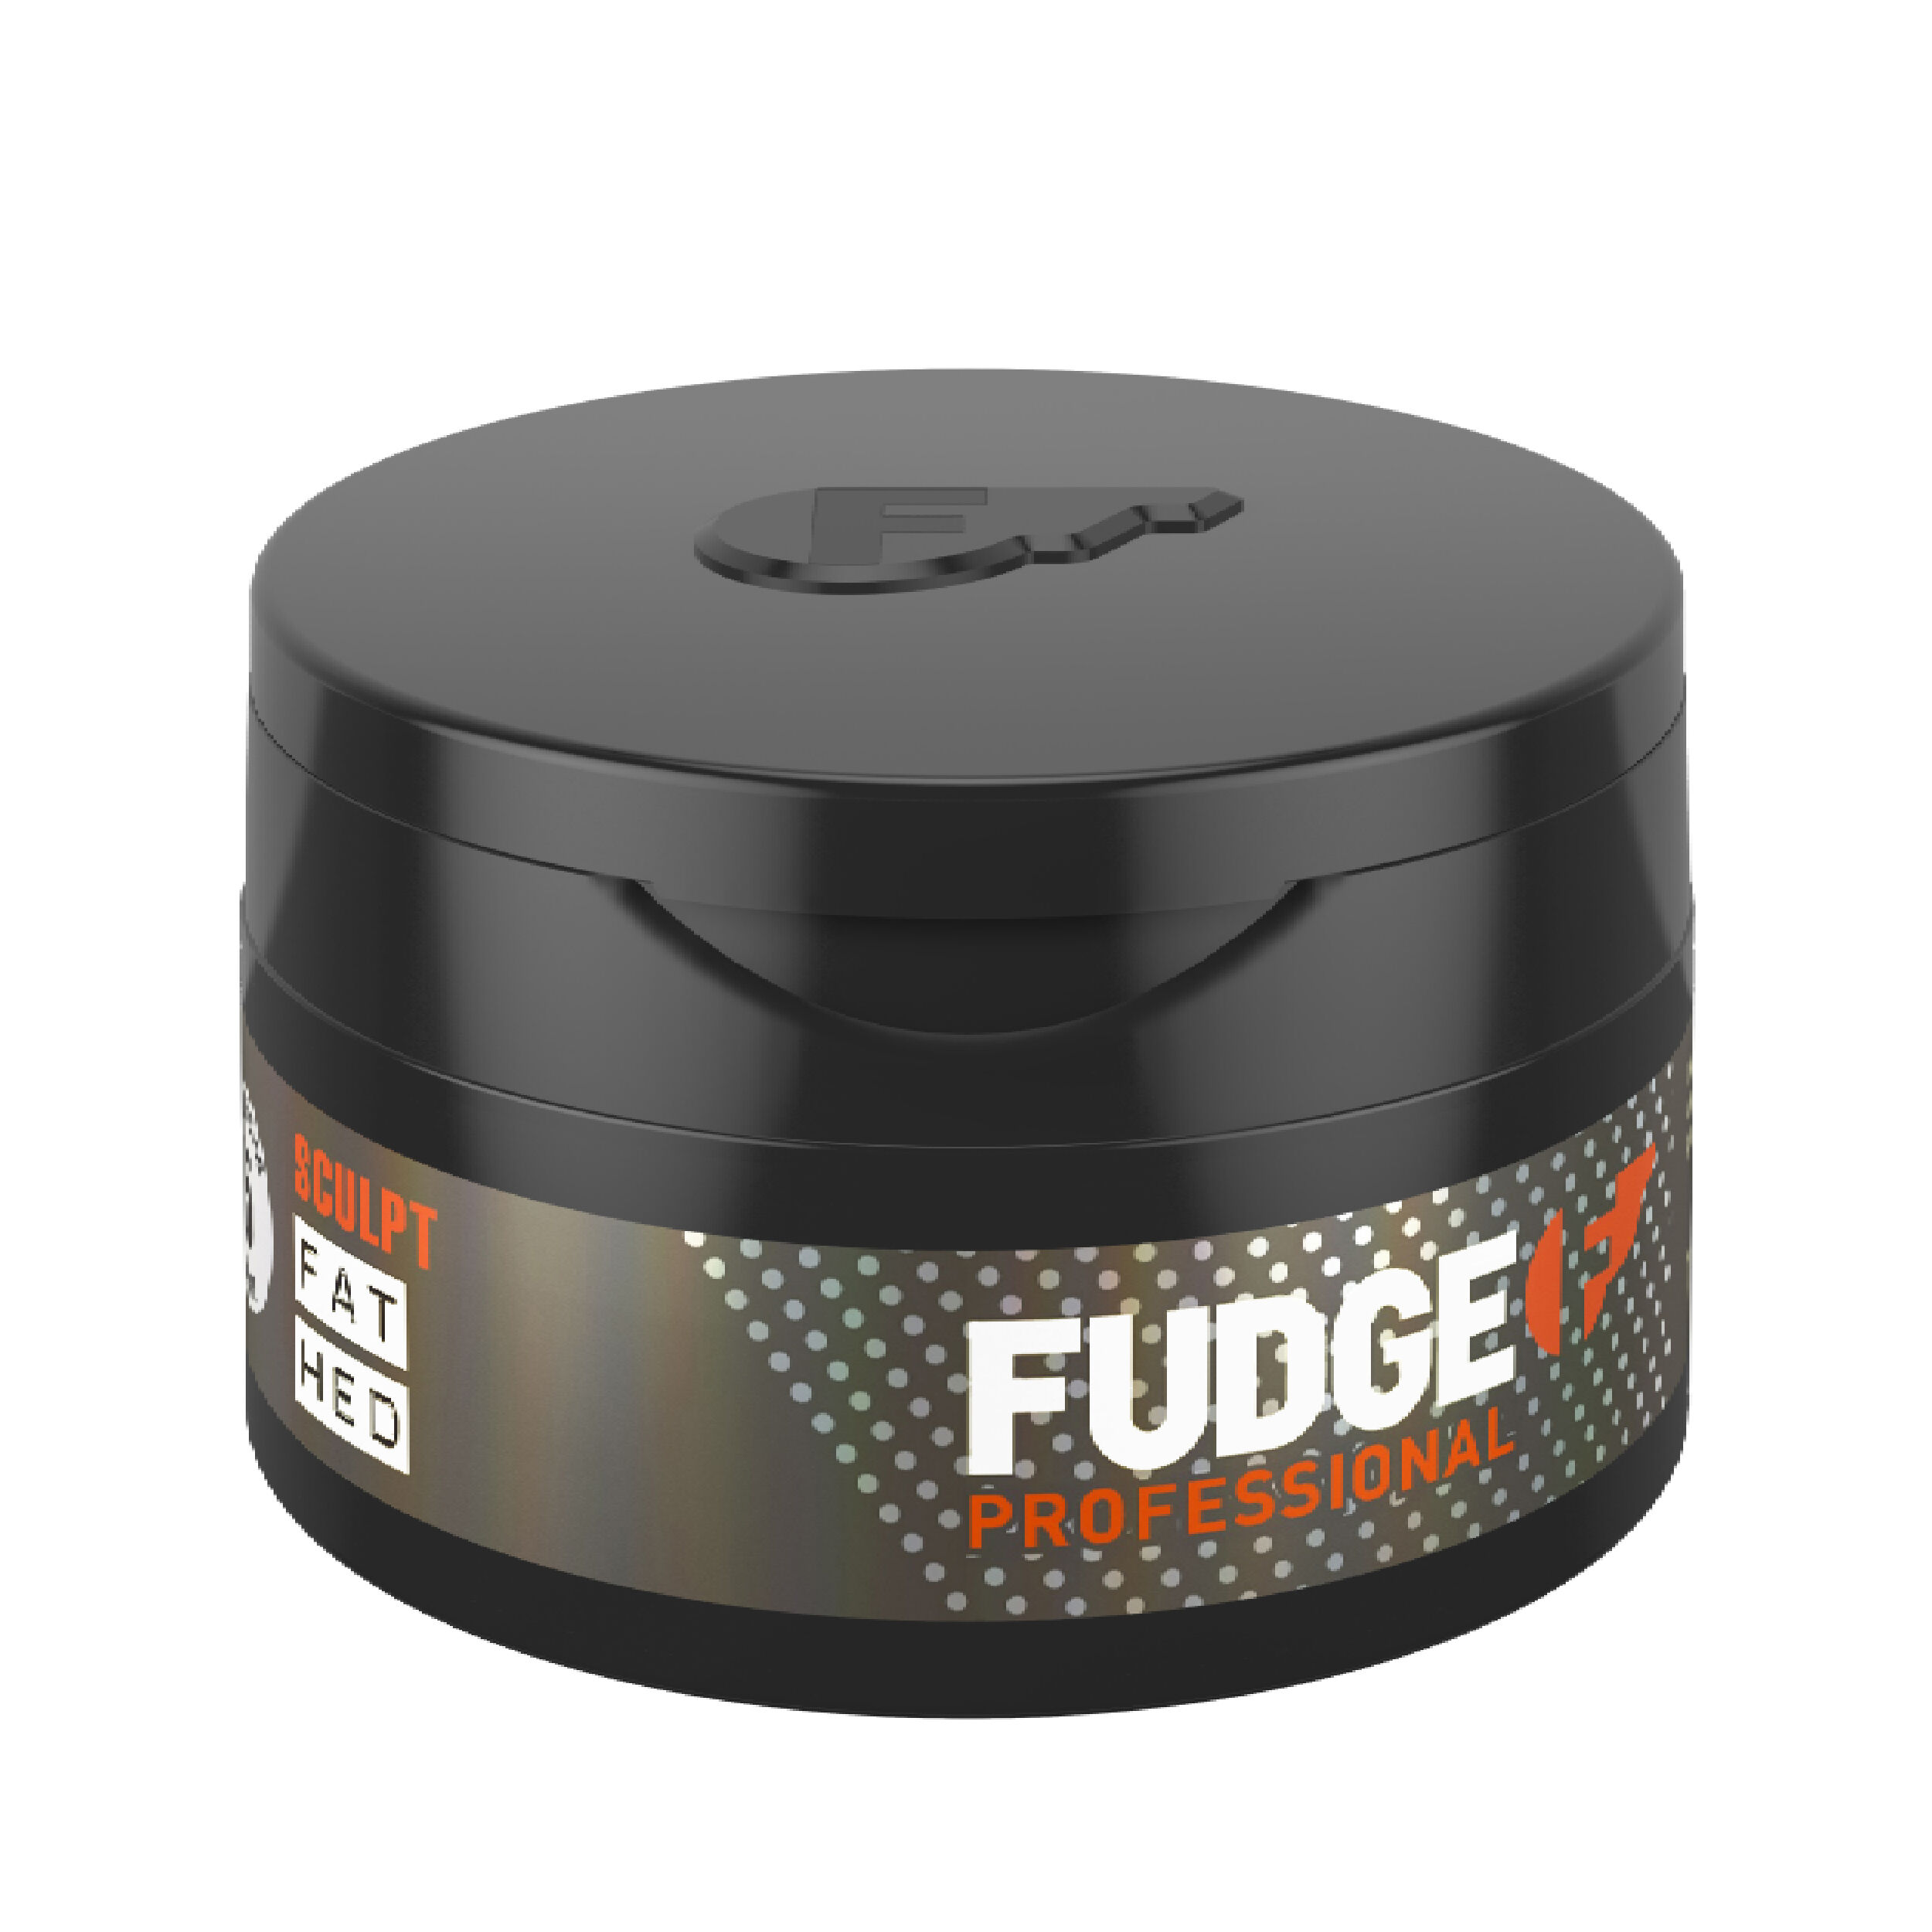 Крем для укладки волос Fudge Fat Hed, 75 гр автомагнитола econ hed 50ubg